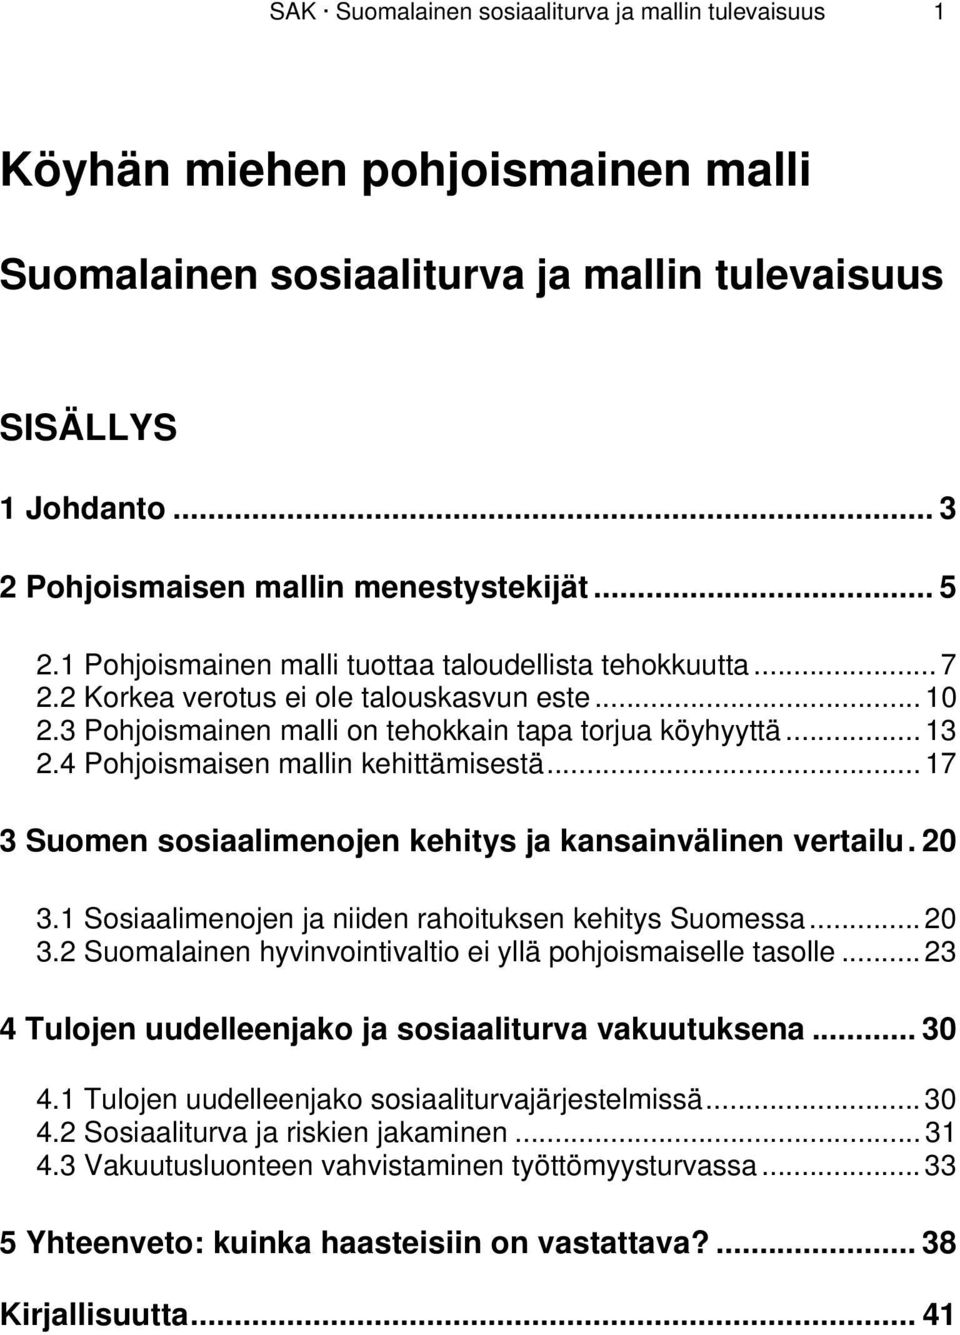 4 Pohjoismaisen mallin kehittämisestä... 17 3 Suomen sosiaalimenojen kehitys ja kansainvälinen vertailu. 20 3.1 Sosiaalimenojen ja niiden rahoituksen kehitys Suomessa... 20 3.2 Suomalainen hyvinvointivaltio ei yllä pohjoismaiselle tasolle.